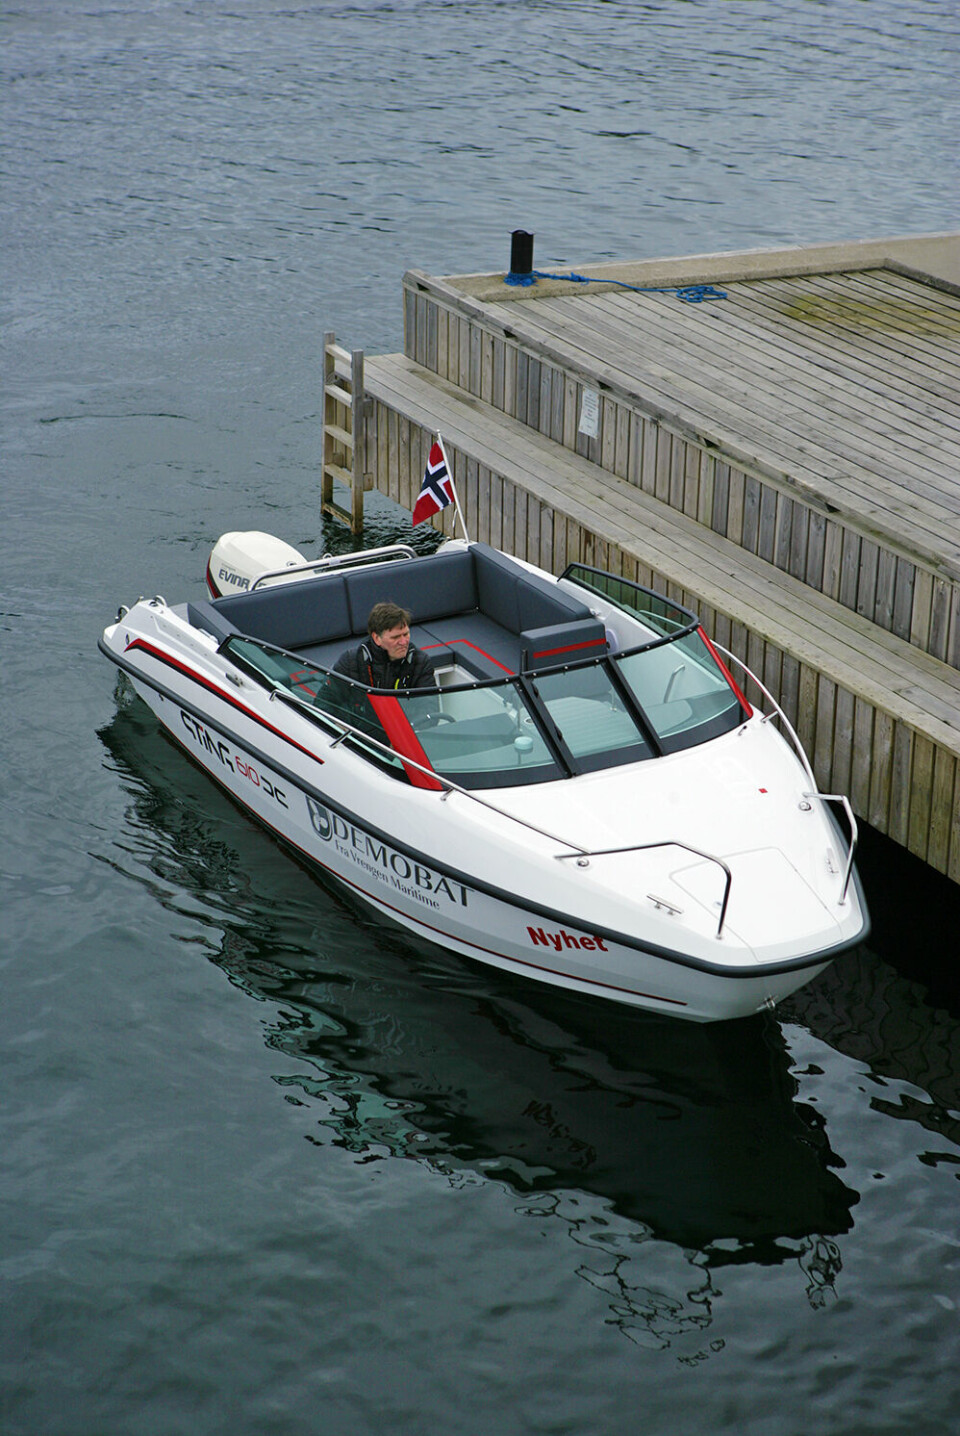 ENKEL OG GREI: Skjærgårdsjeepen er en tradisjonell båt, men den er likevel vår favoritt - i all sin enkelhet Sting 610 S